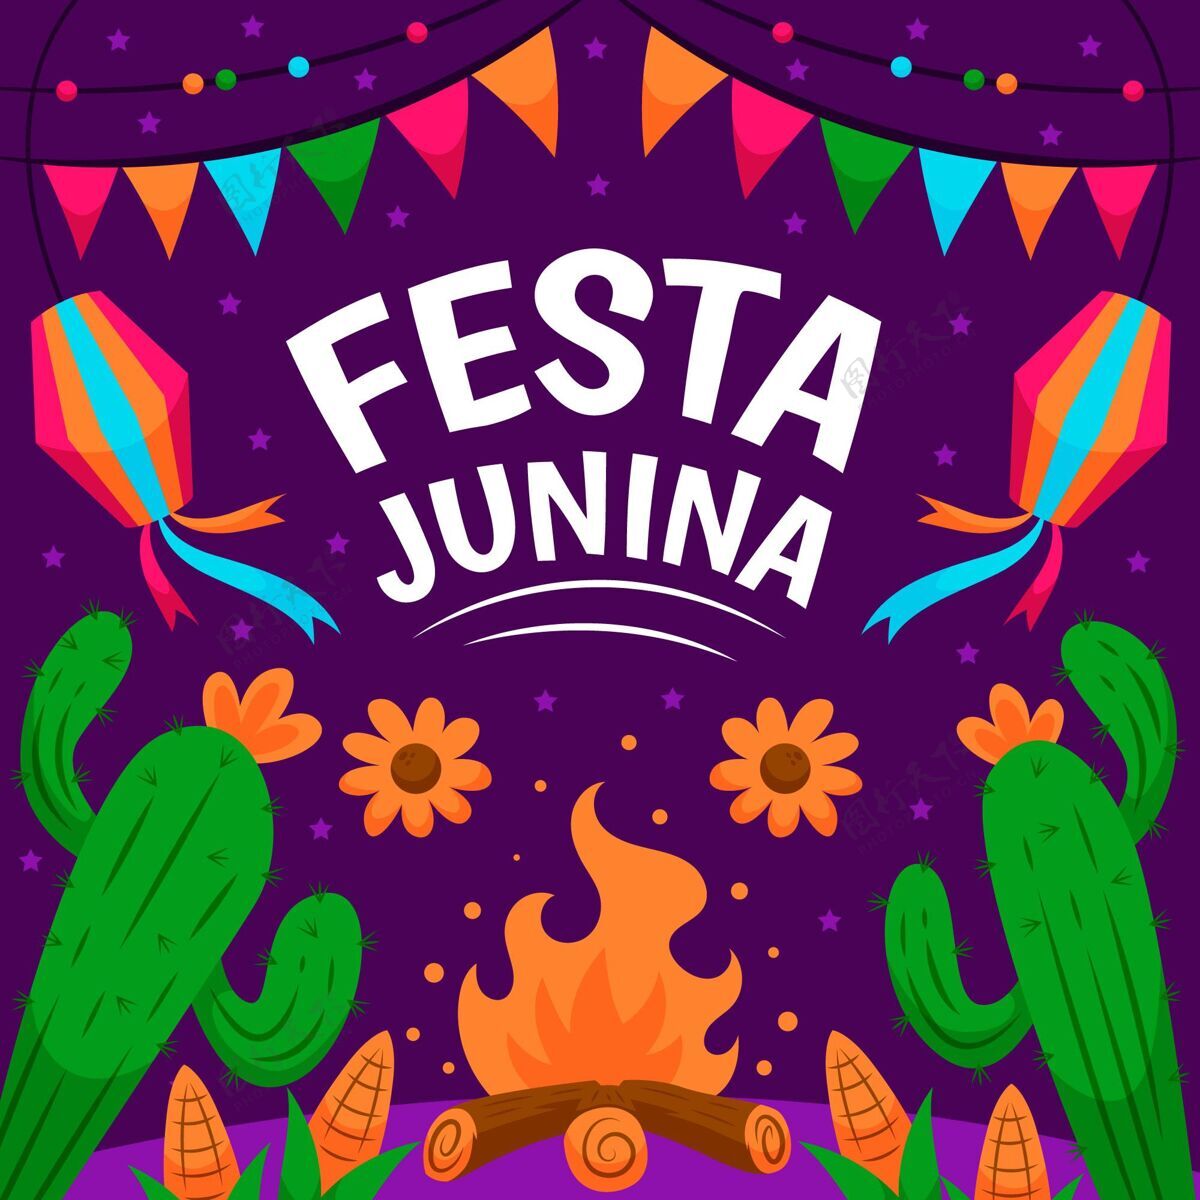 圣约节卡通片festajunina系列朱尼娜节活动巴西